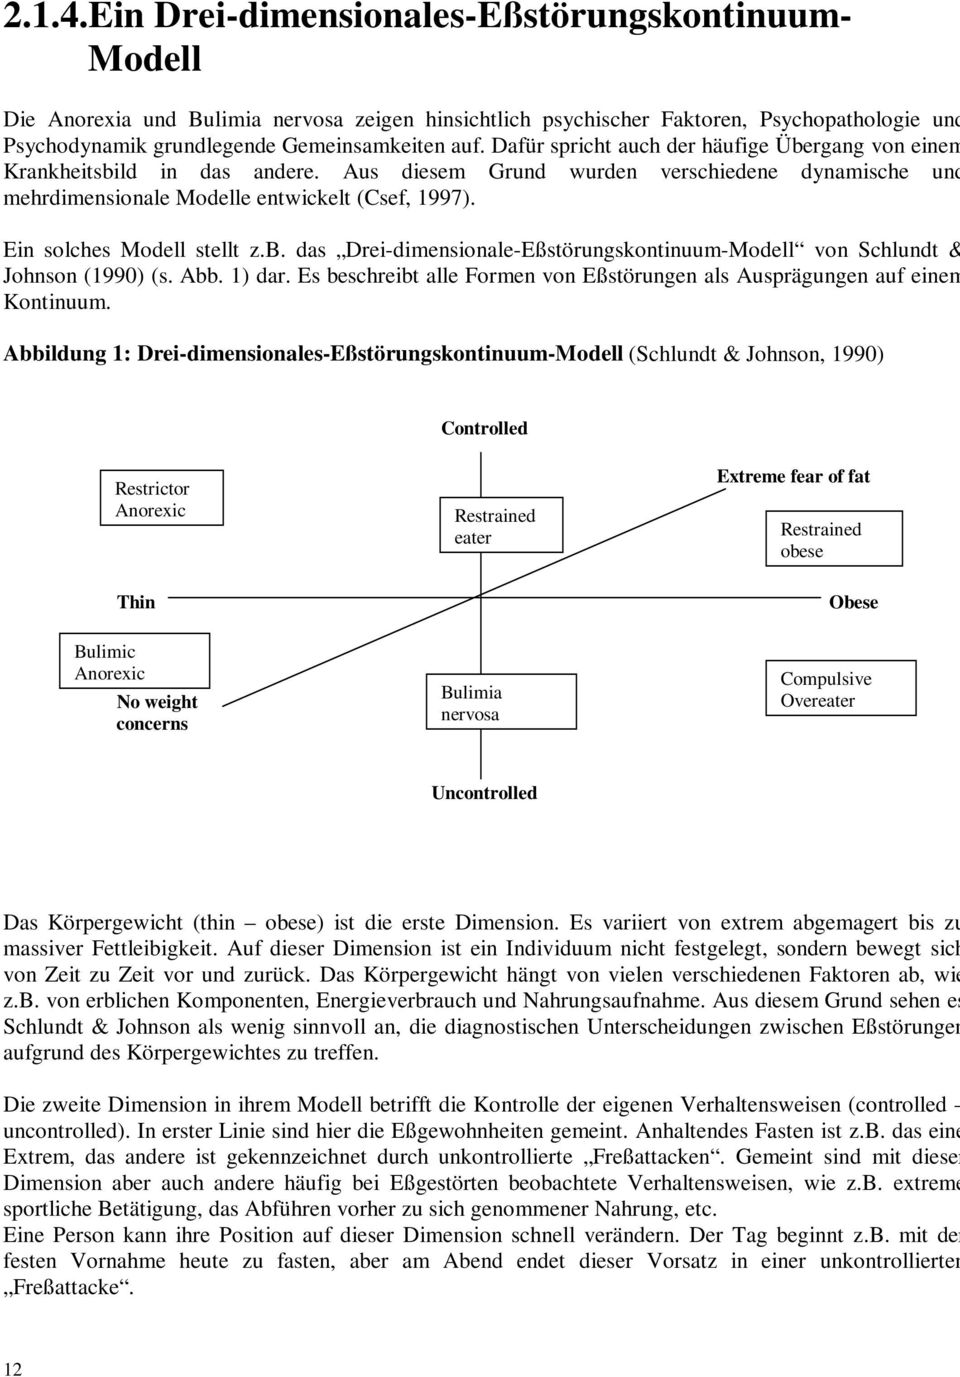 Ein solches Modell stellt z.b. das Drei-dimensionale-Eßstörungskontinuum-Modell von Schlundt & Johnson (1990) (s. Abb. 1) dar.